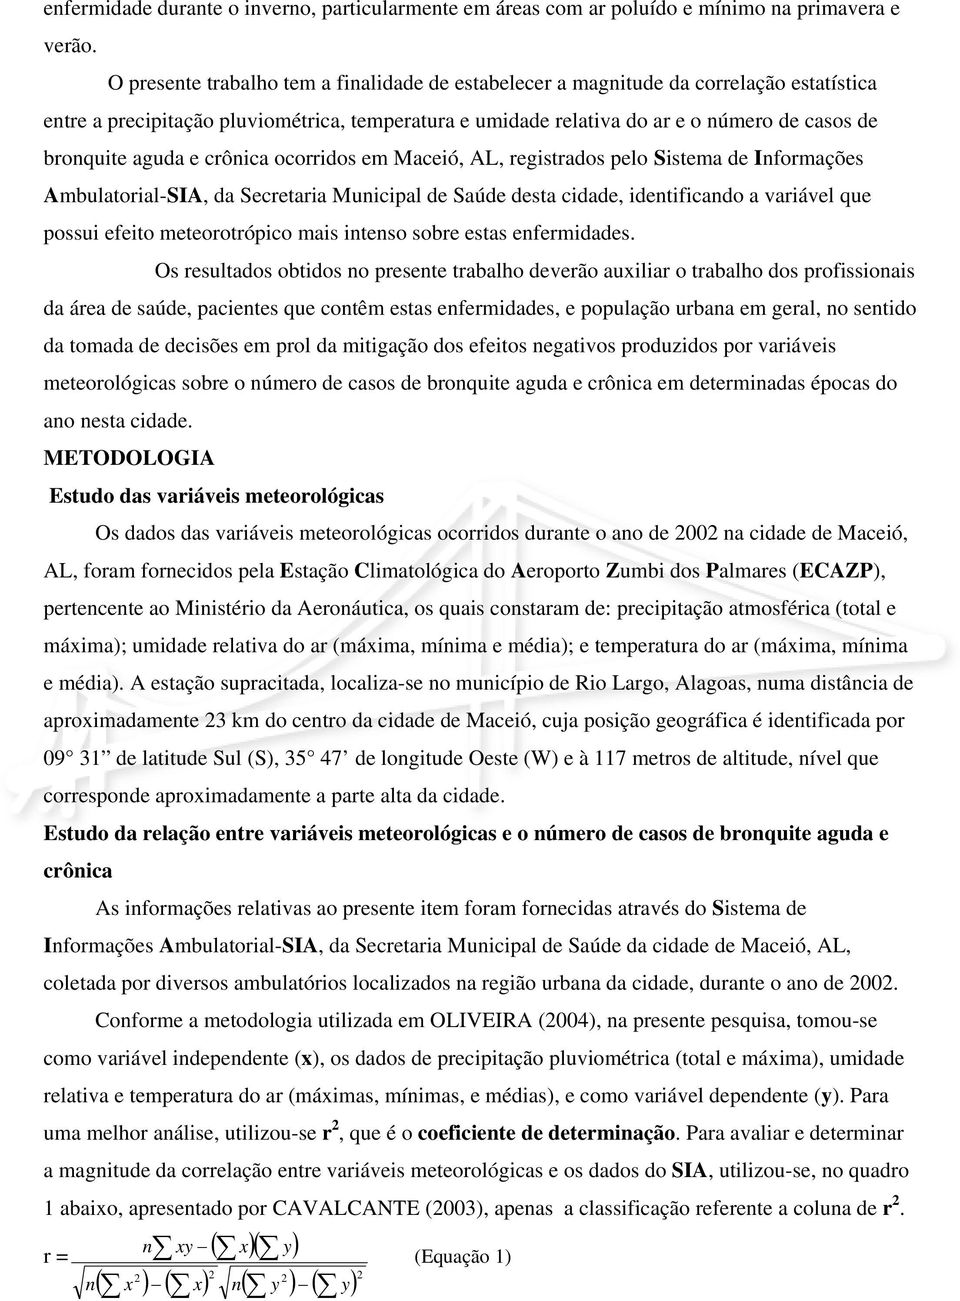 aguda e crônica ocorridos em Maceió, AL, registrados pelo Sistema de Informações Ambulatorial-SIA, da Secretaria Municipal de Saúde desta cidade, identificando a variável que possui efeito